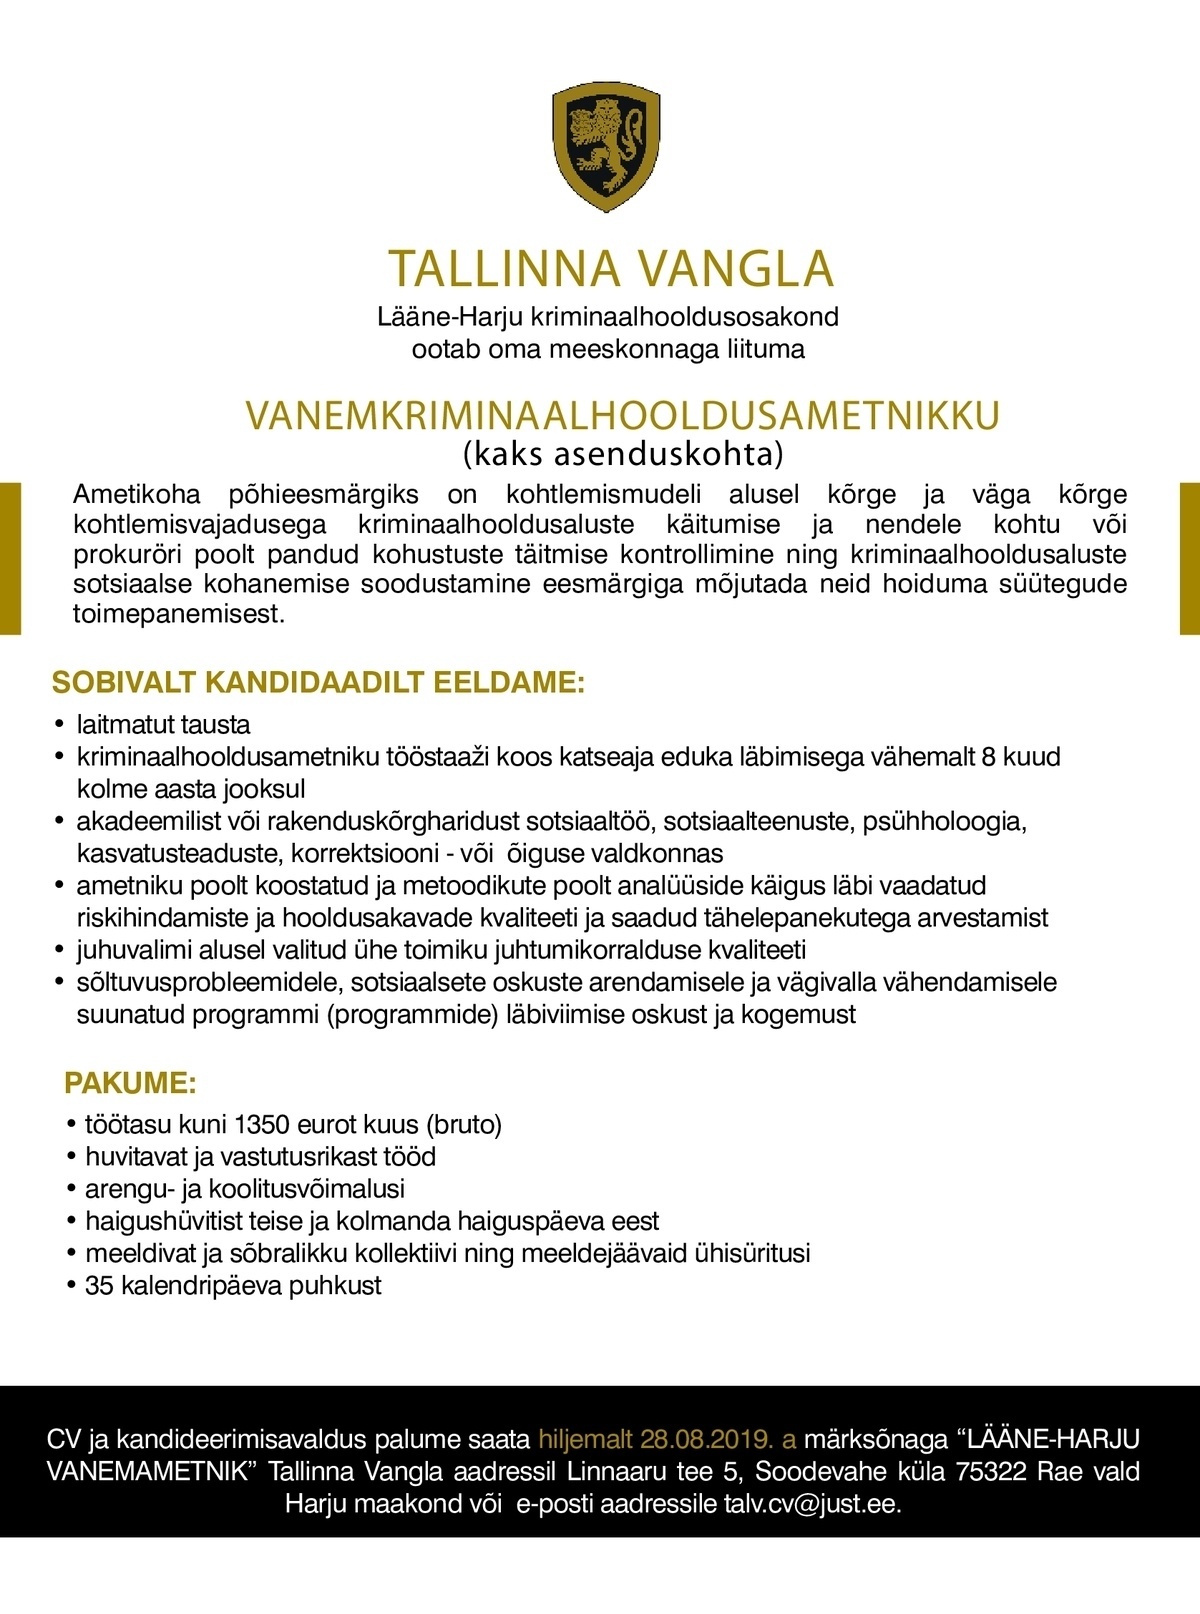 Tallinna Vangla Lääne-Harju Vanemkriminaalhooldusametnik (Asenduskoht)